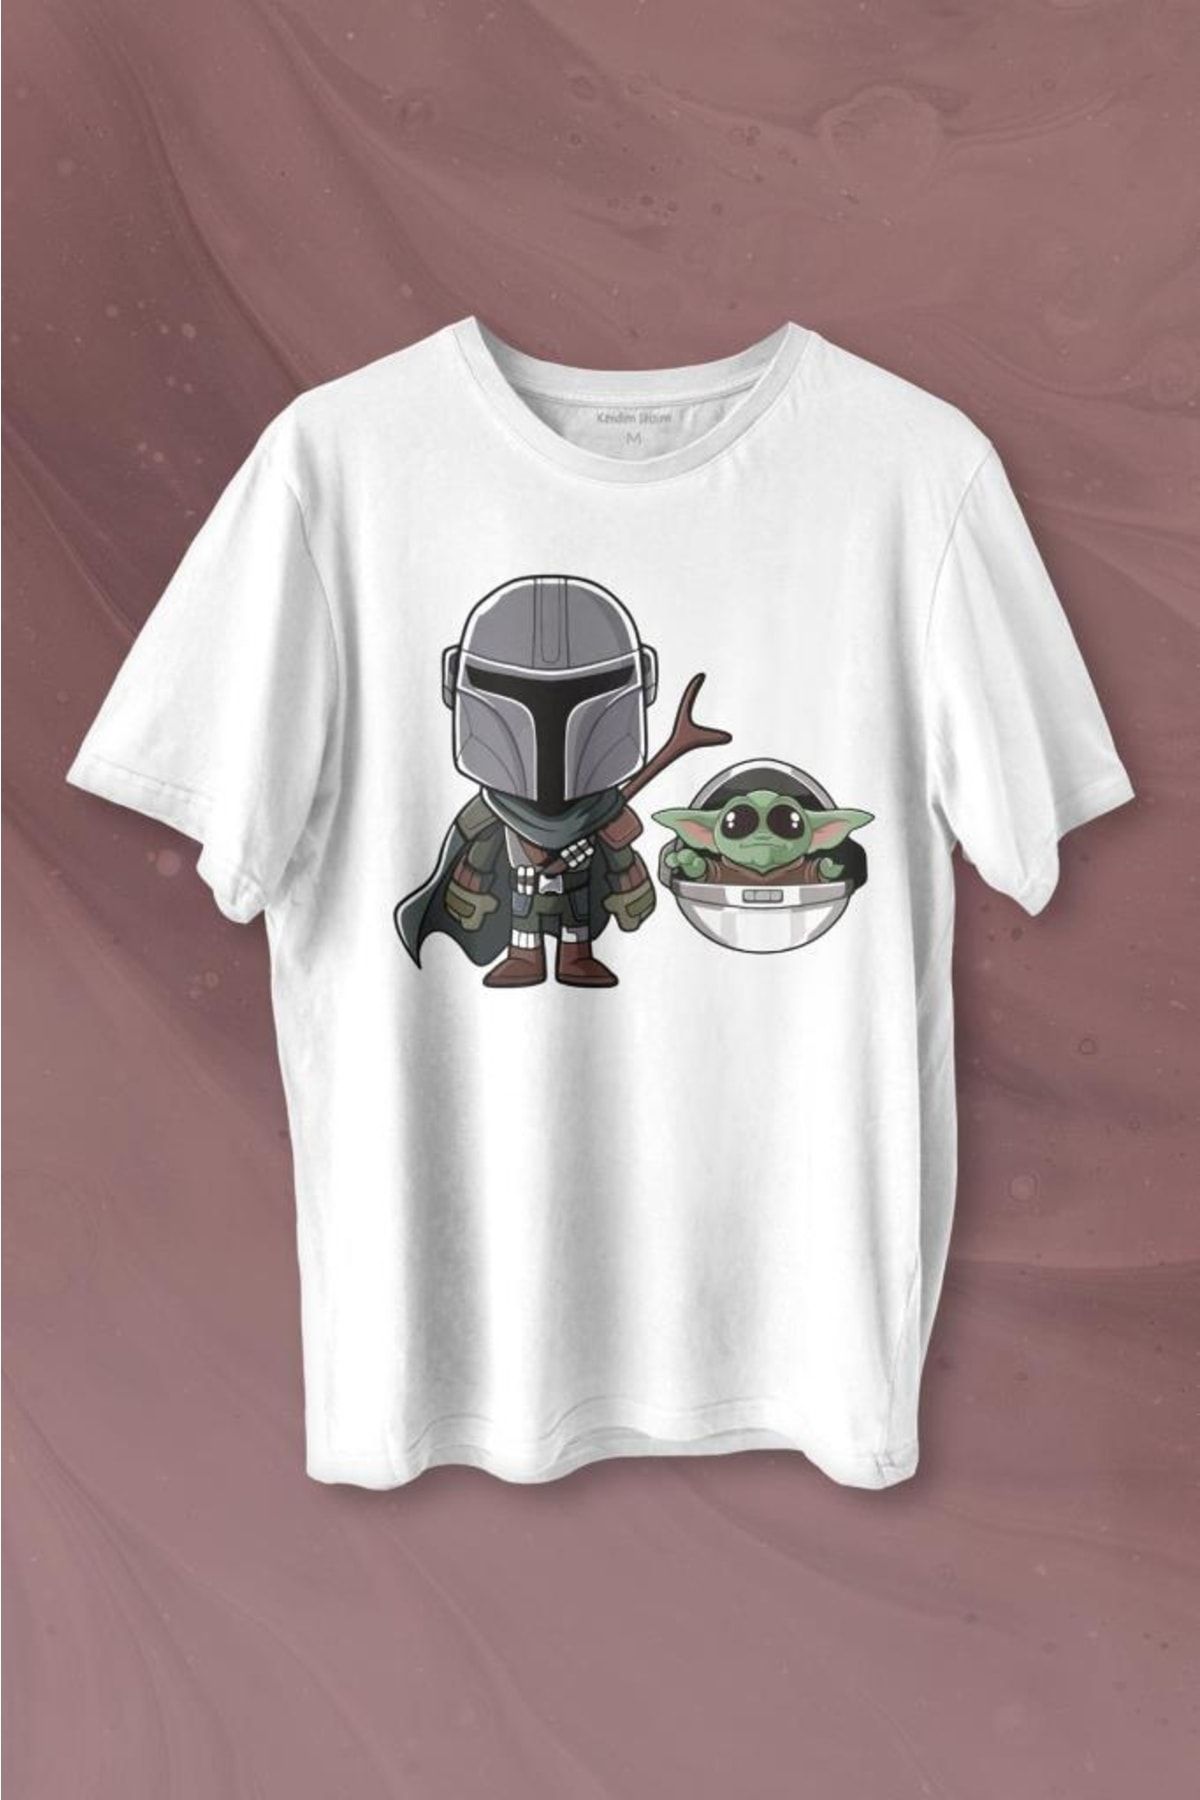 Kendim Seçtim Baby Yoda Mando Figür The Mandalorian Bebek Yoda Star Wars Baskılı Tişört Unisex T-shirt